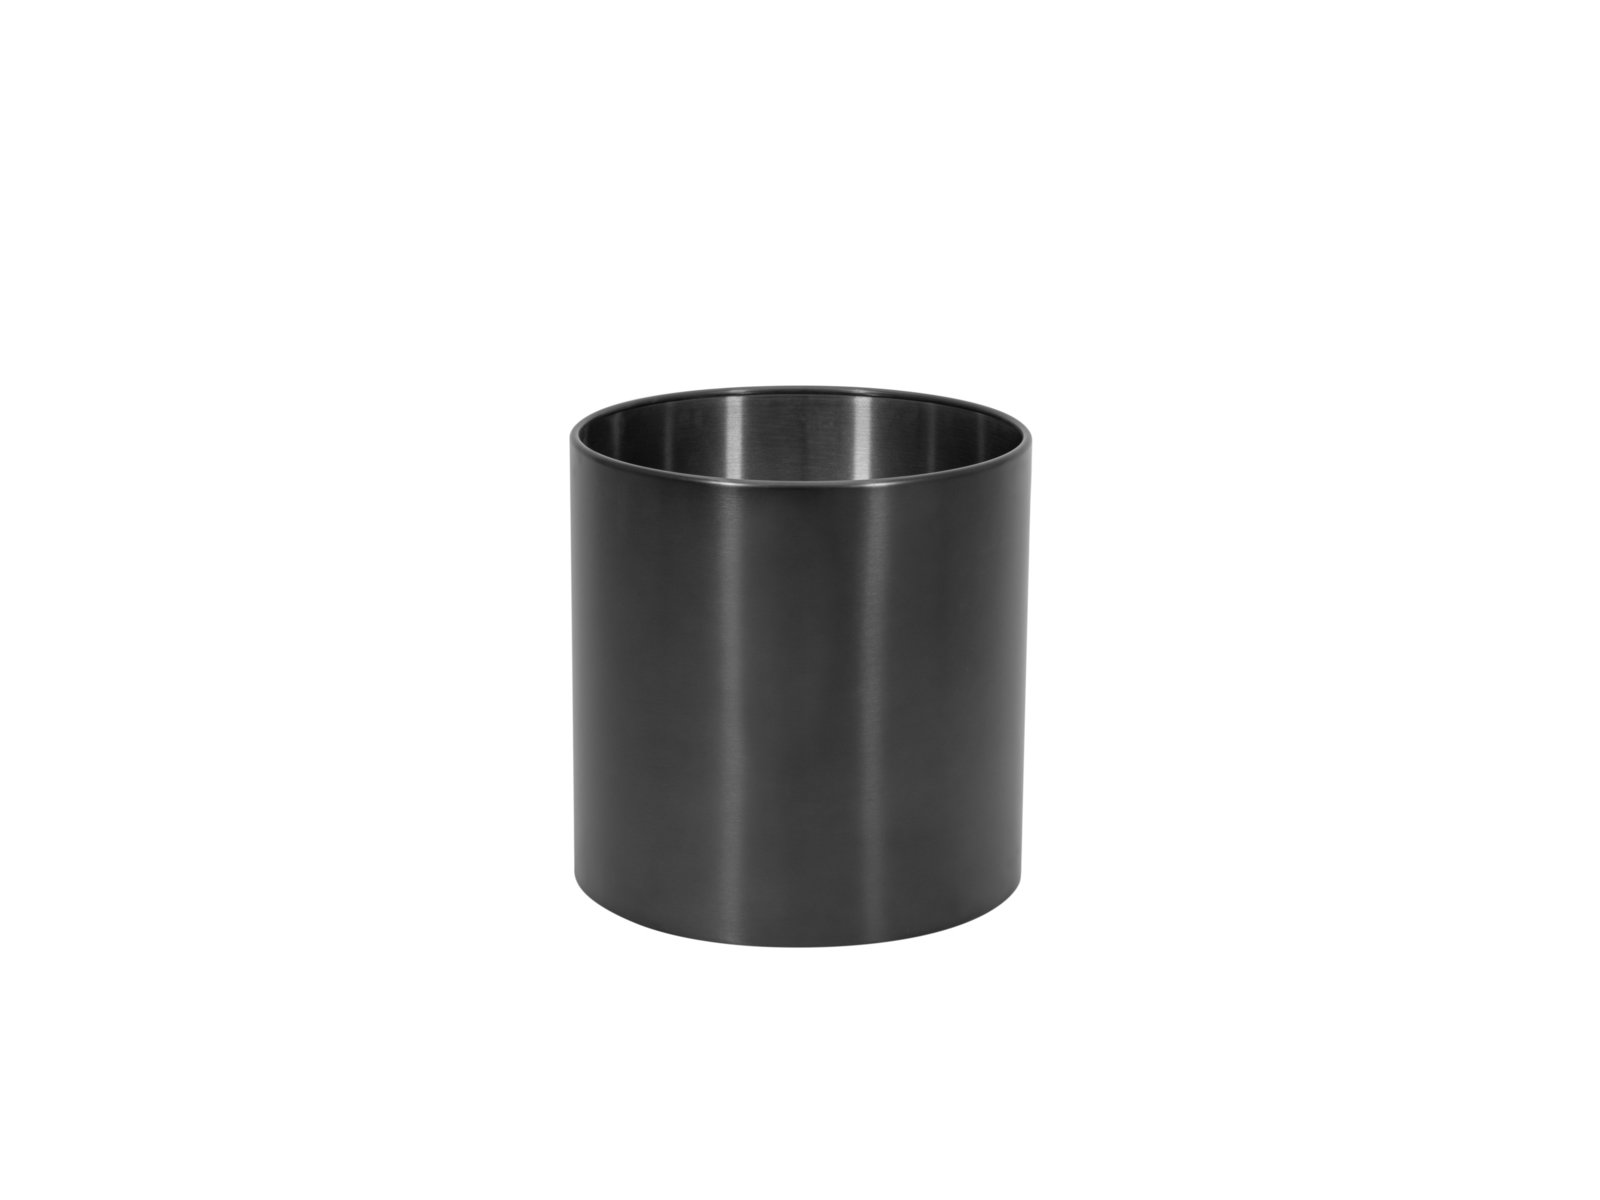 EUROPALMS STEELECHT-40 Nova, stainless steel pot, anthracite, Ã40cm